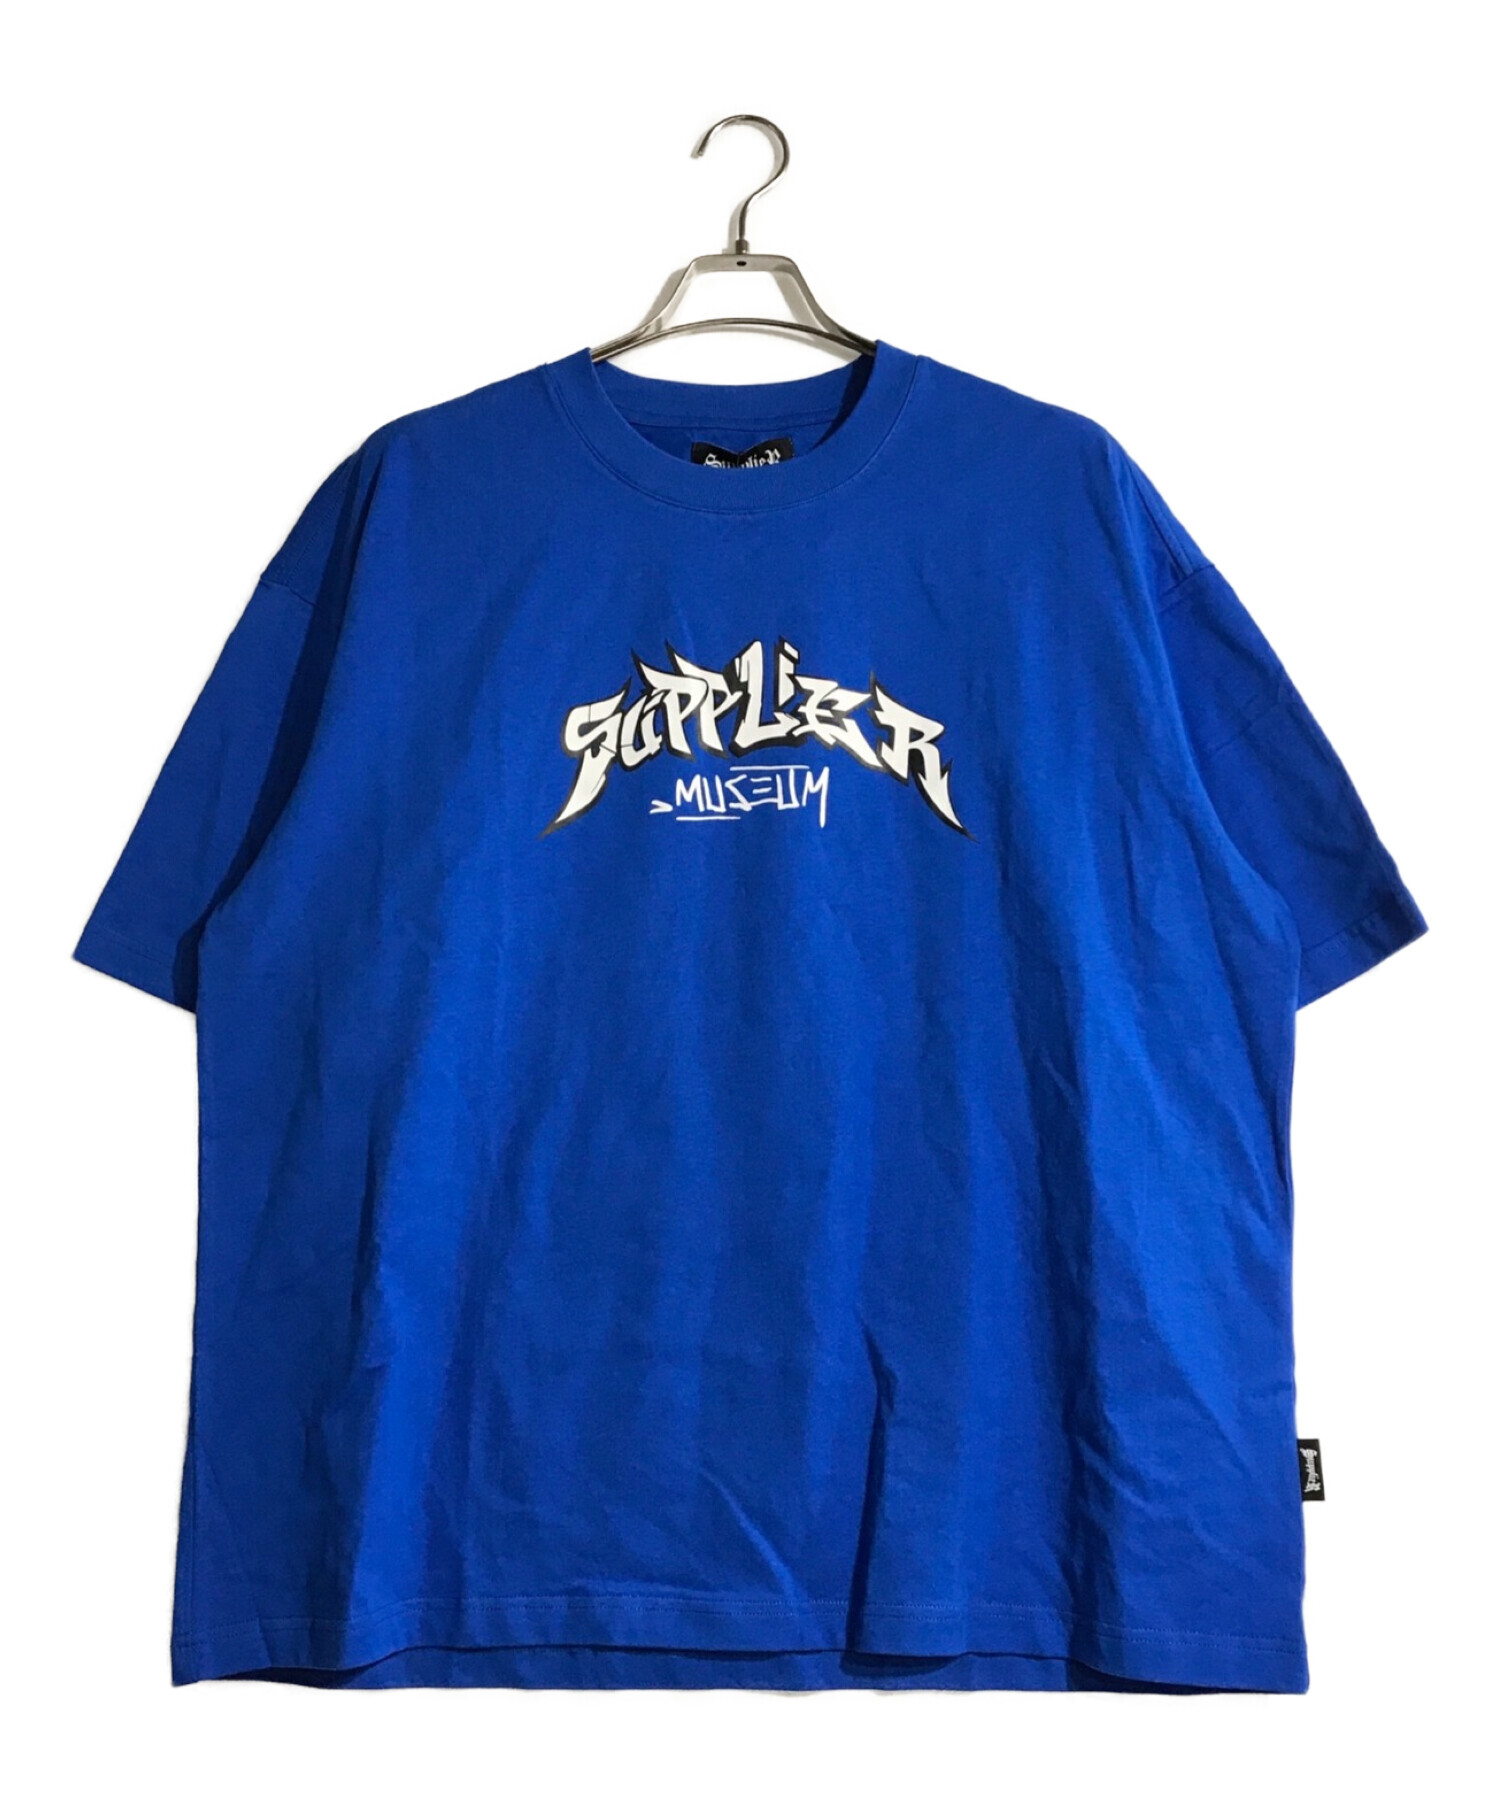 SUPPLIERのTシャツトップス - Tシャツ/カットソー(半袖/袖なし)